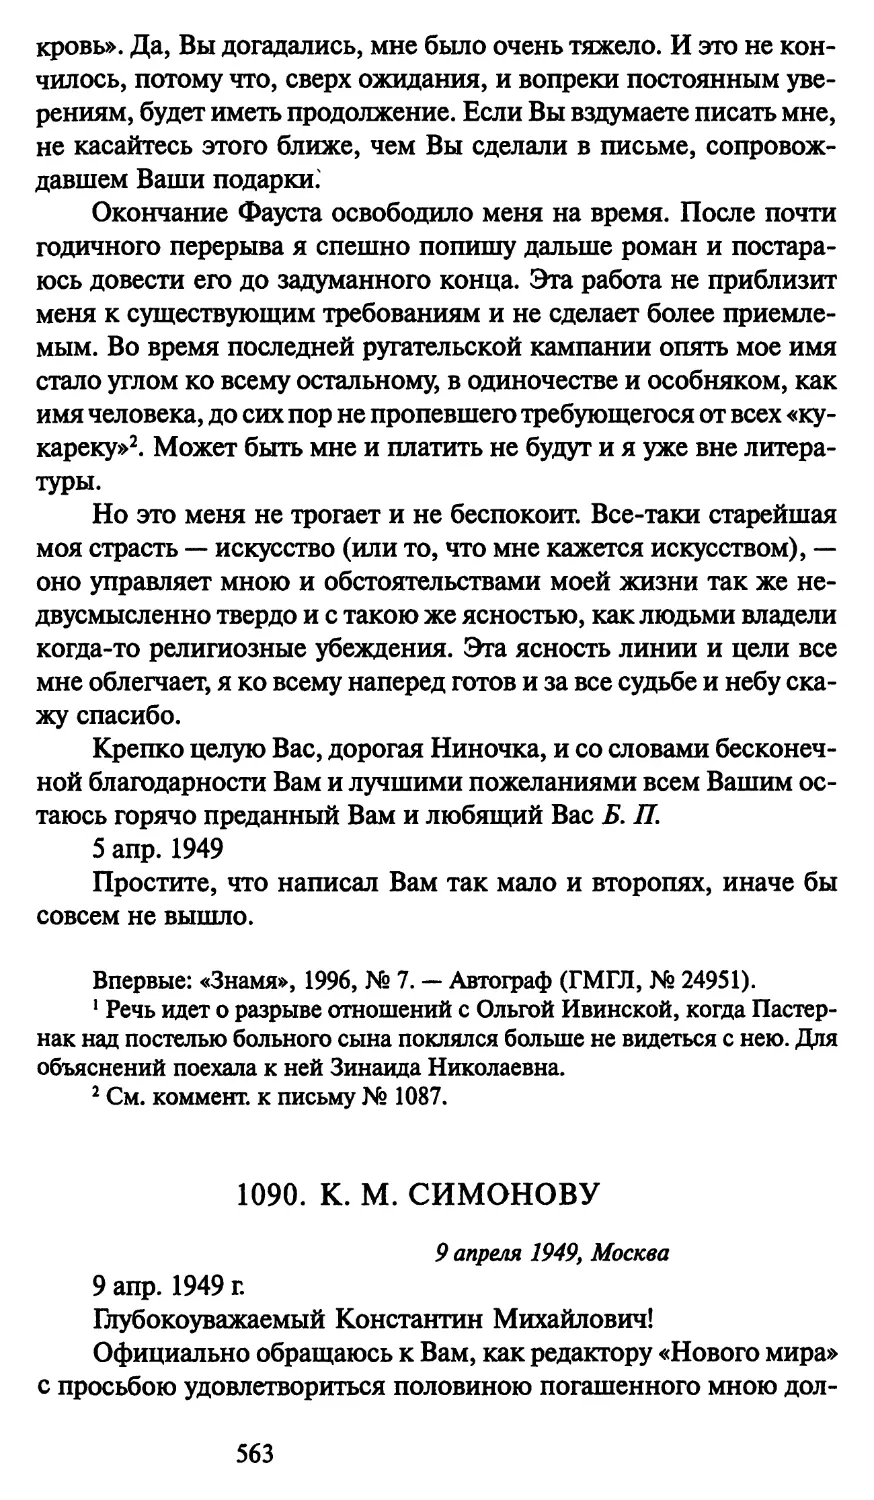 1090. К. М. Симонову 9 апреля 1949